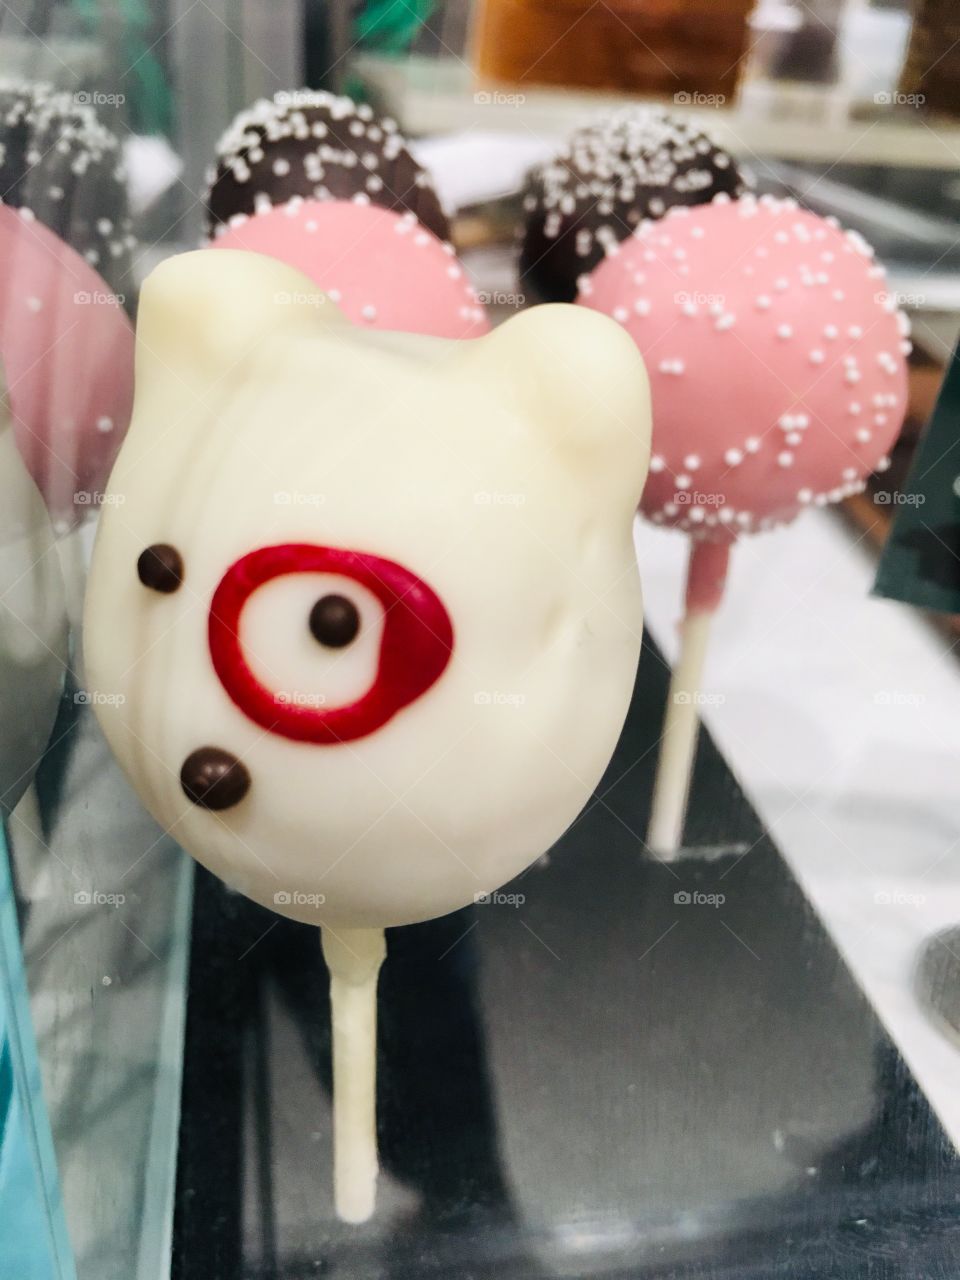 Target ice bear cake pop at Starbucks